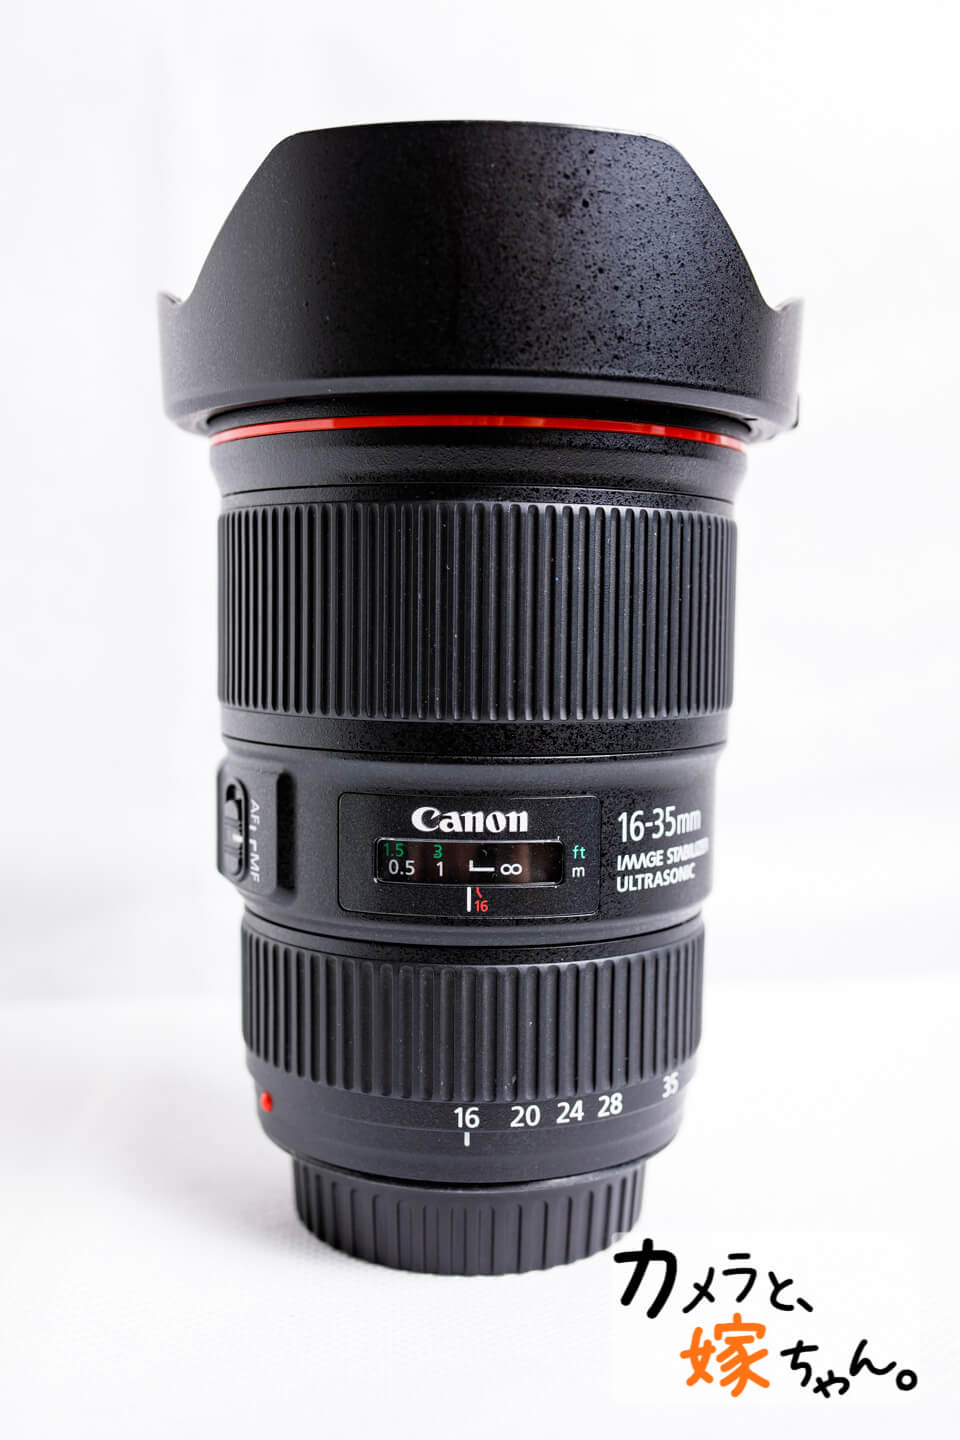 【レビュー】Canon小三元レンズEF16-35mm F4L IS USM - カメラ 